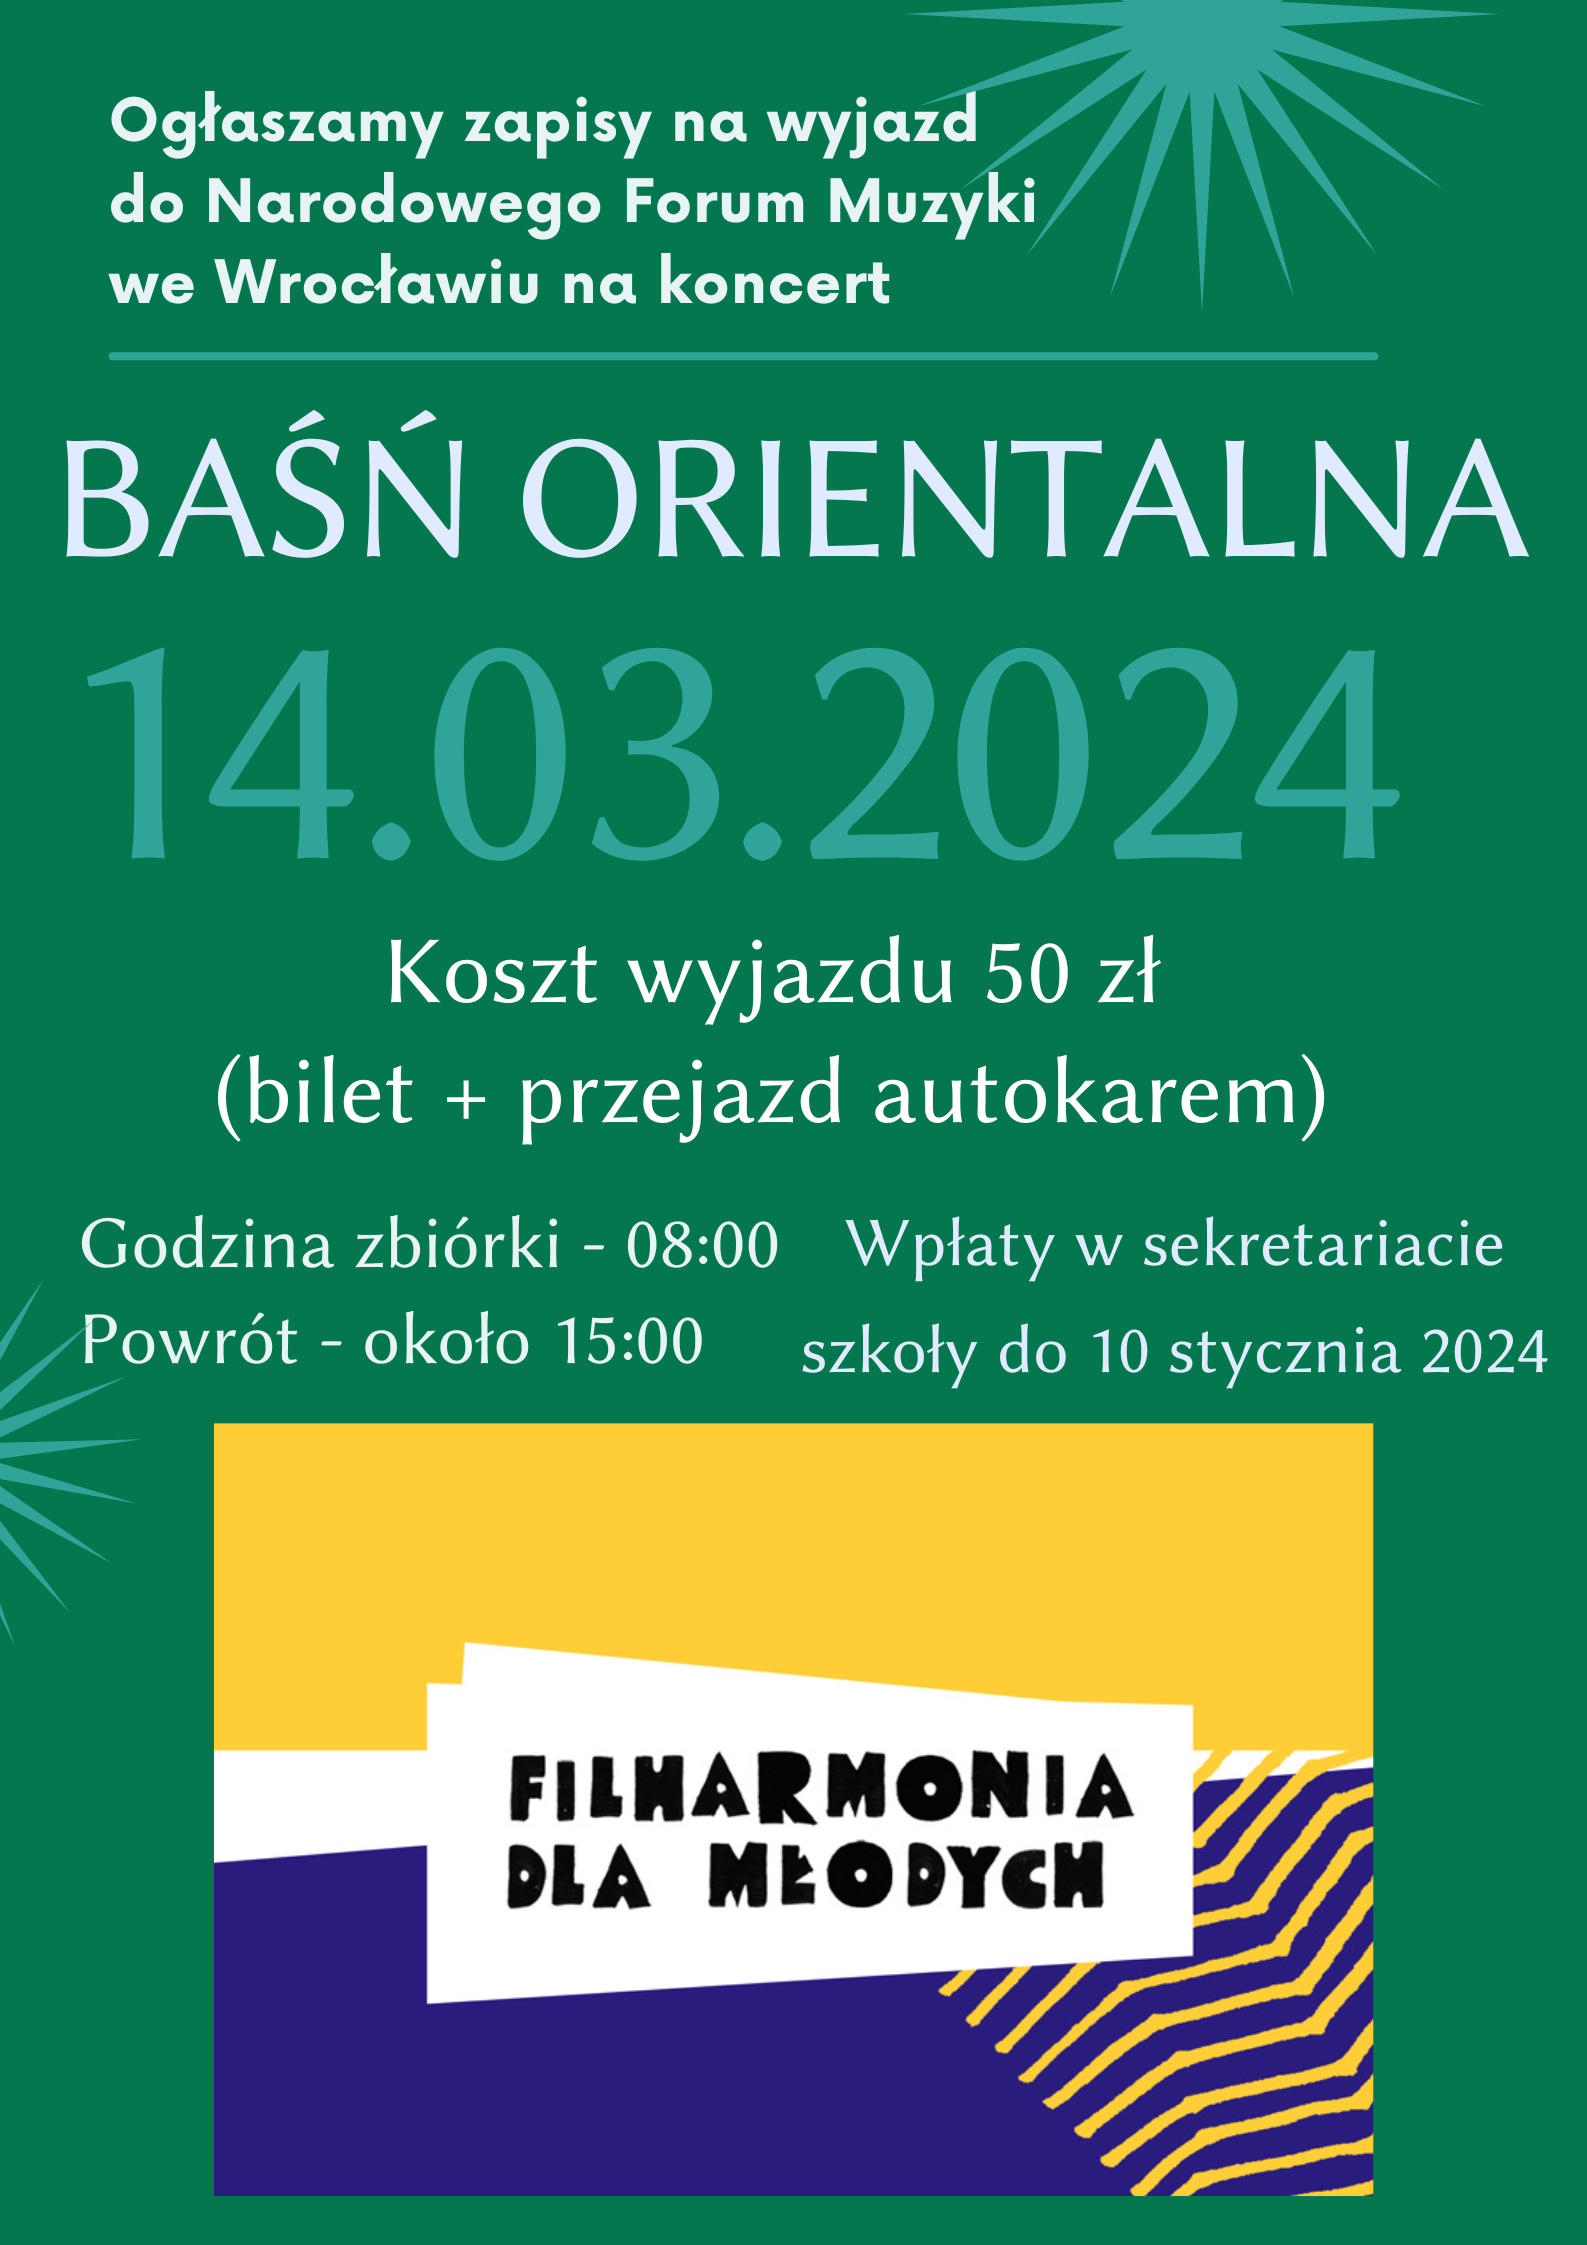 Plakat na zielonym tle ze szczegółową informacją tekstową dotyczącą wyjazdu do NFM we Wrocławiu na koncert "Baśń orientalna " - 14.03.2023